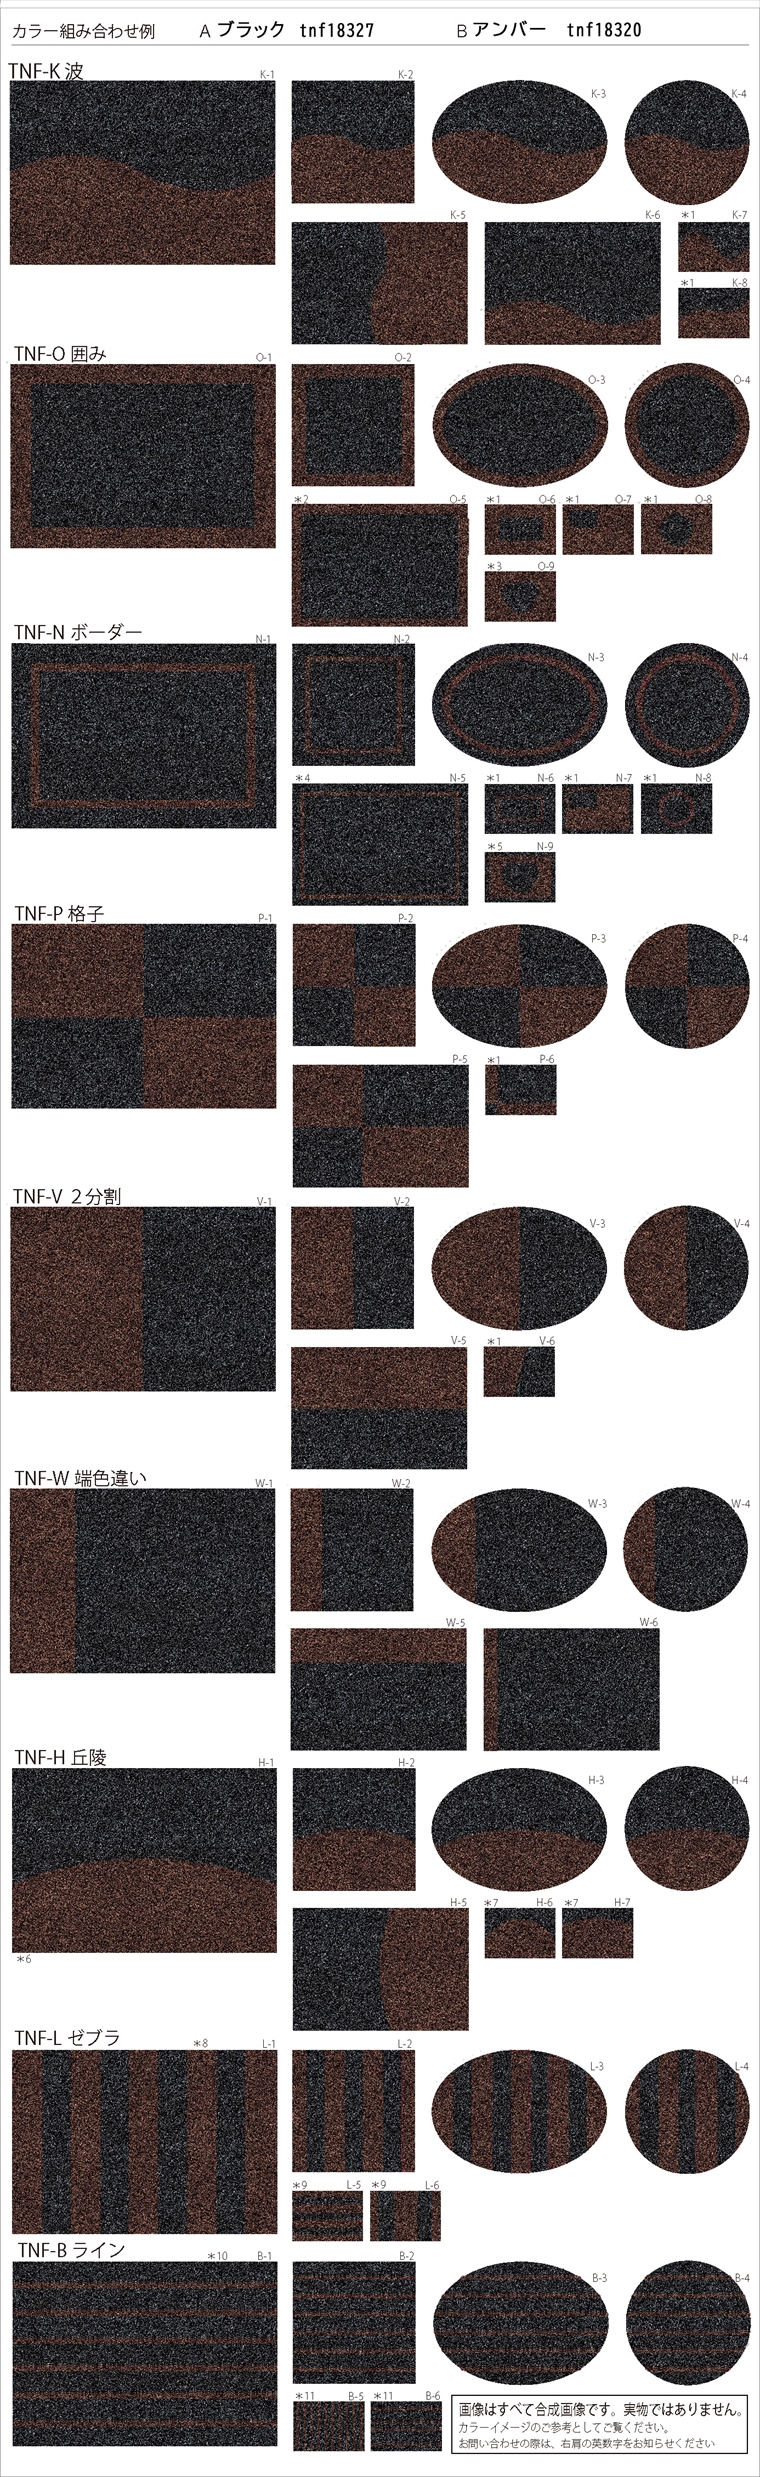 「ベーシックアクリルパターン柄」のカラー組み合わせ例